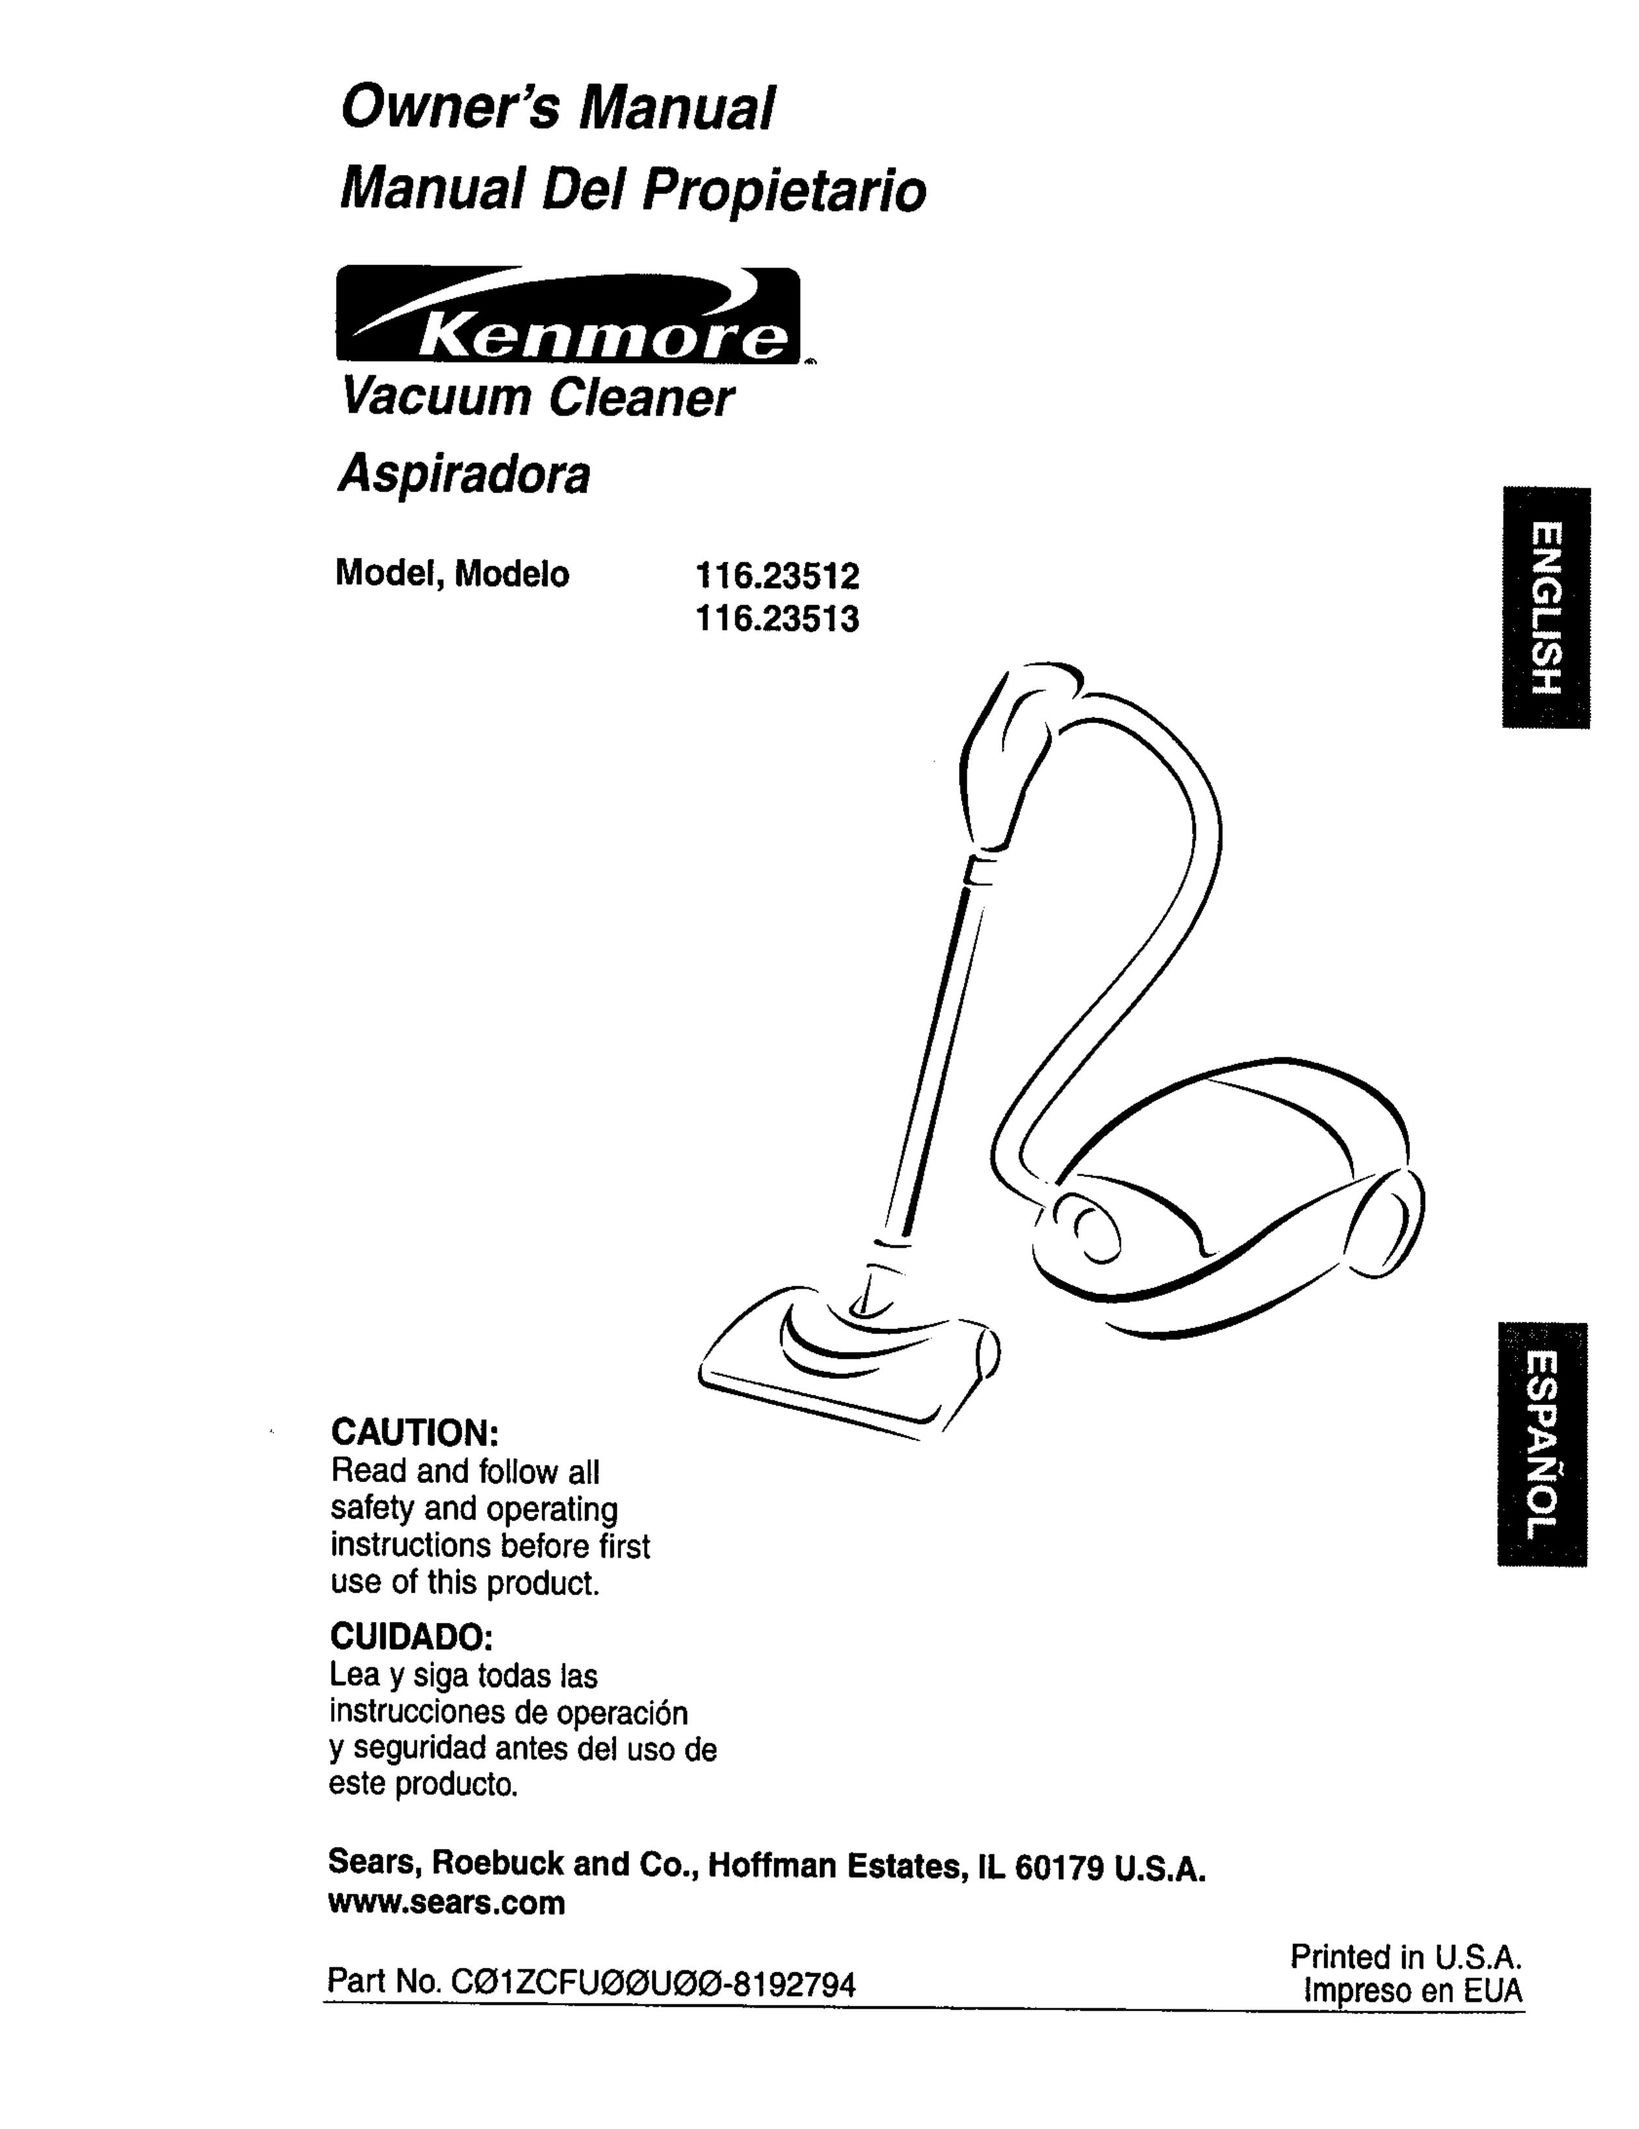 Kenmore 116.23513 Vacuum Cleaner User Manual